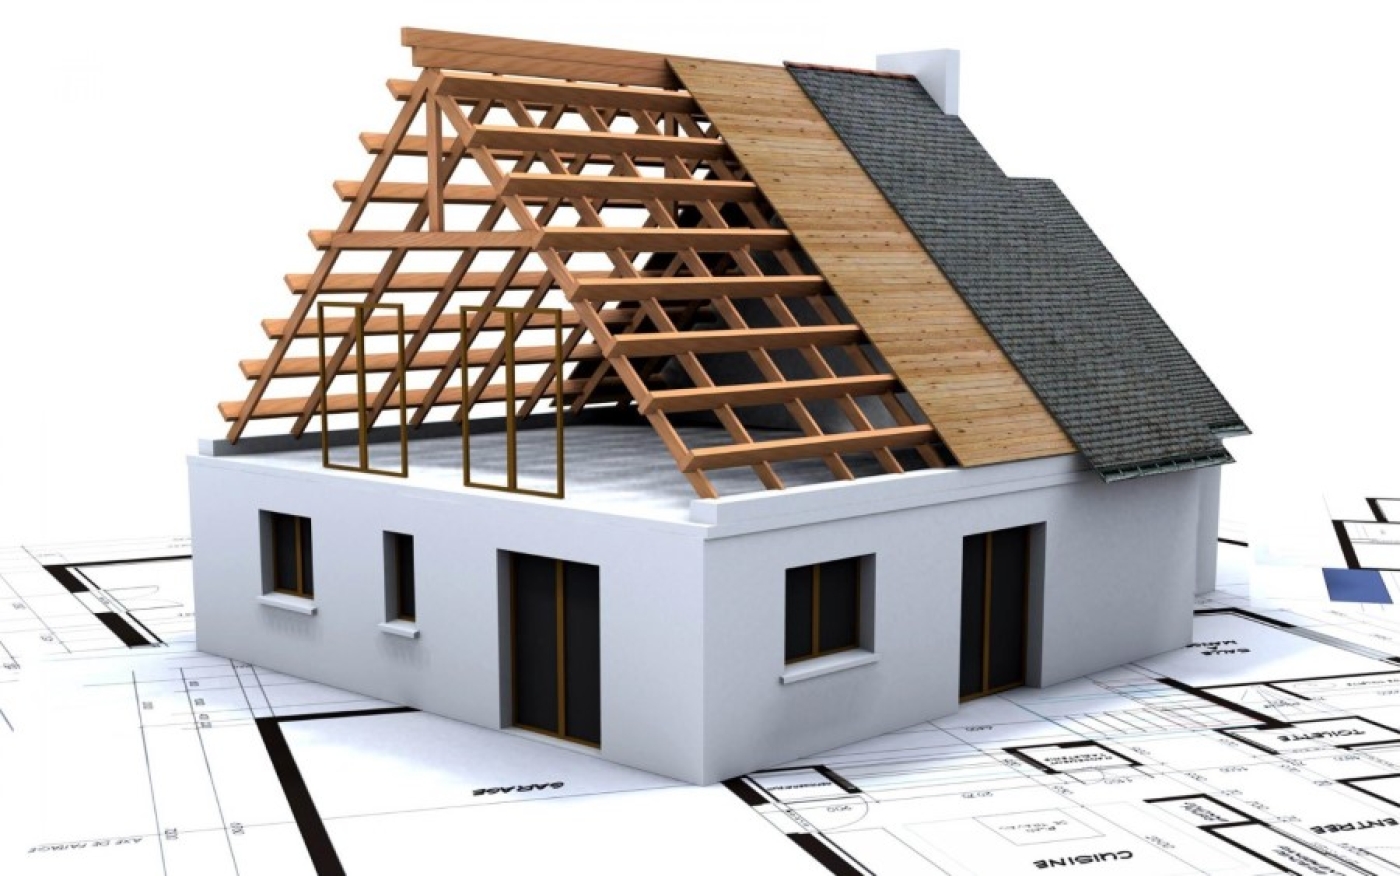 B Беларуси упрощен порядок возведения и реконструкции одноквартирных жилых домов и хозяйственных построек